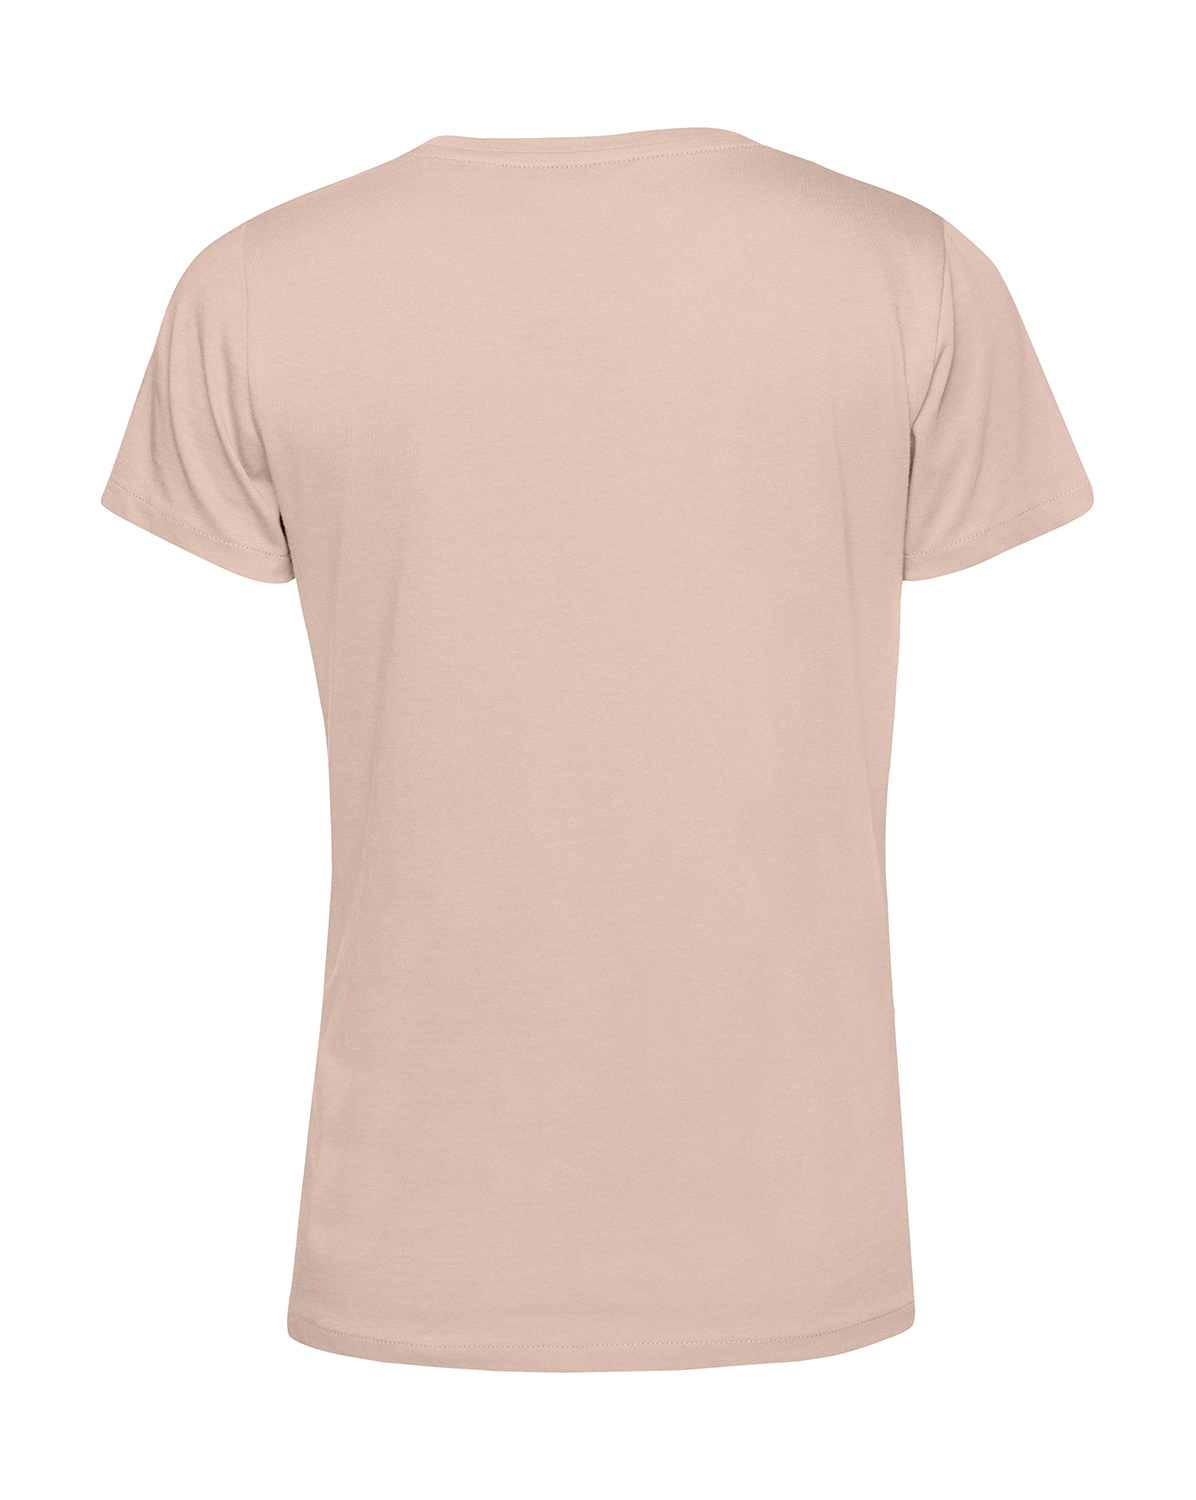 Nachhaltiges T-Shirt Damen Outdoor - Herzstromkurve